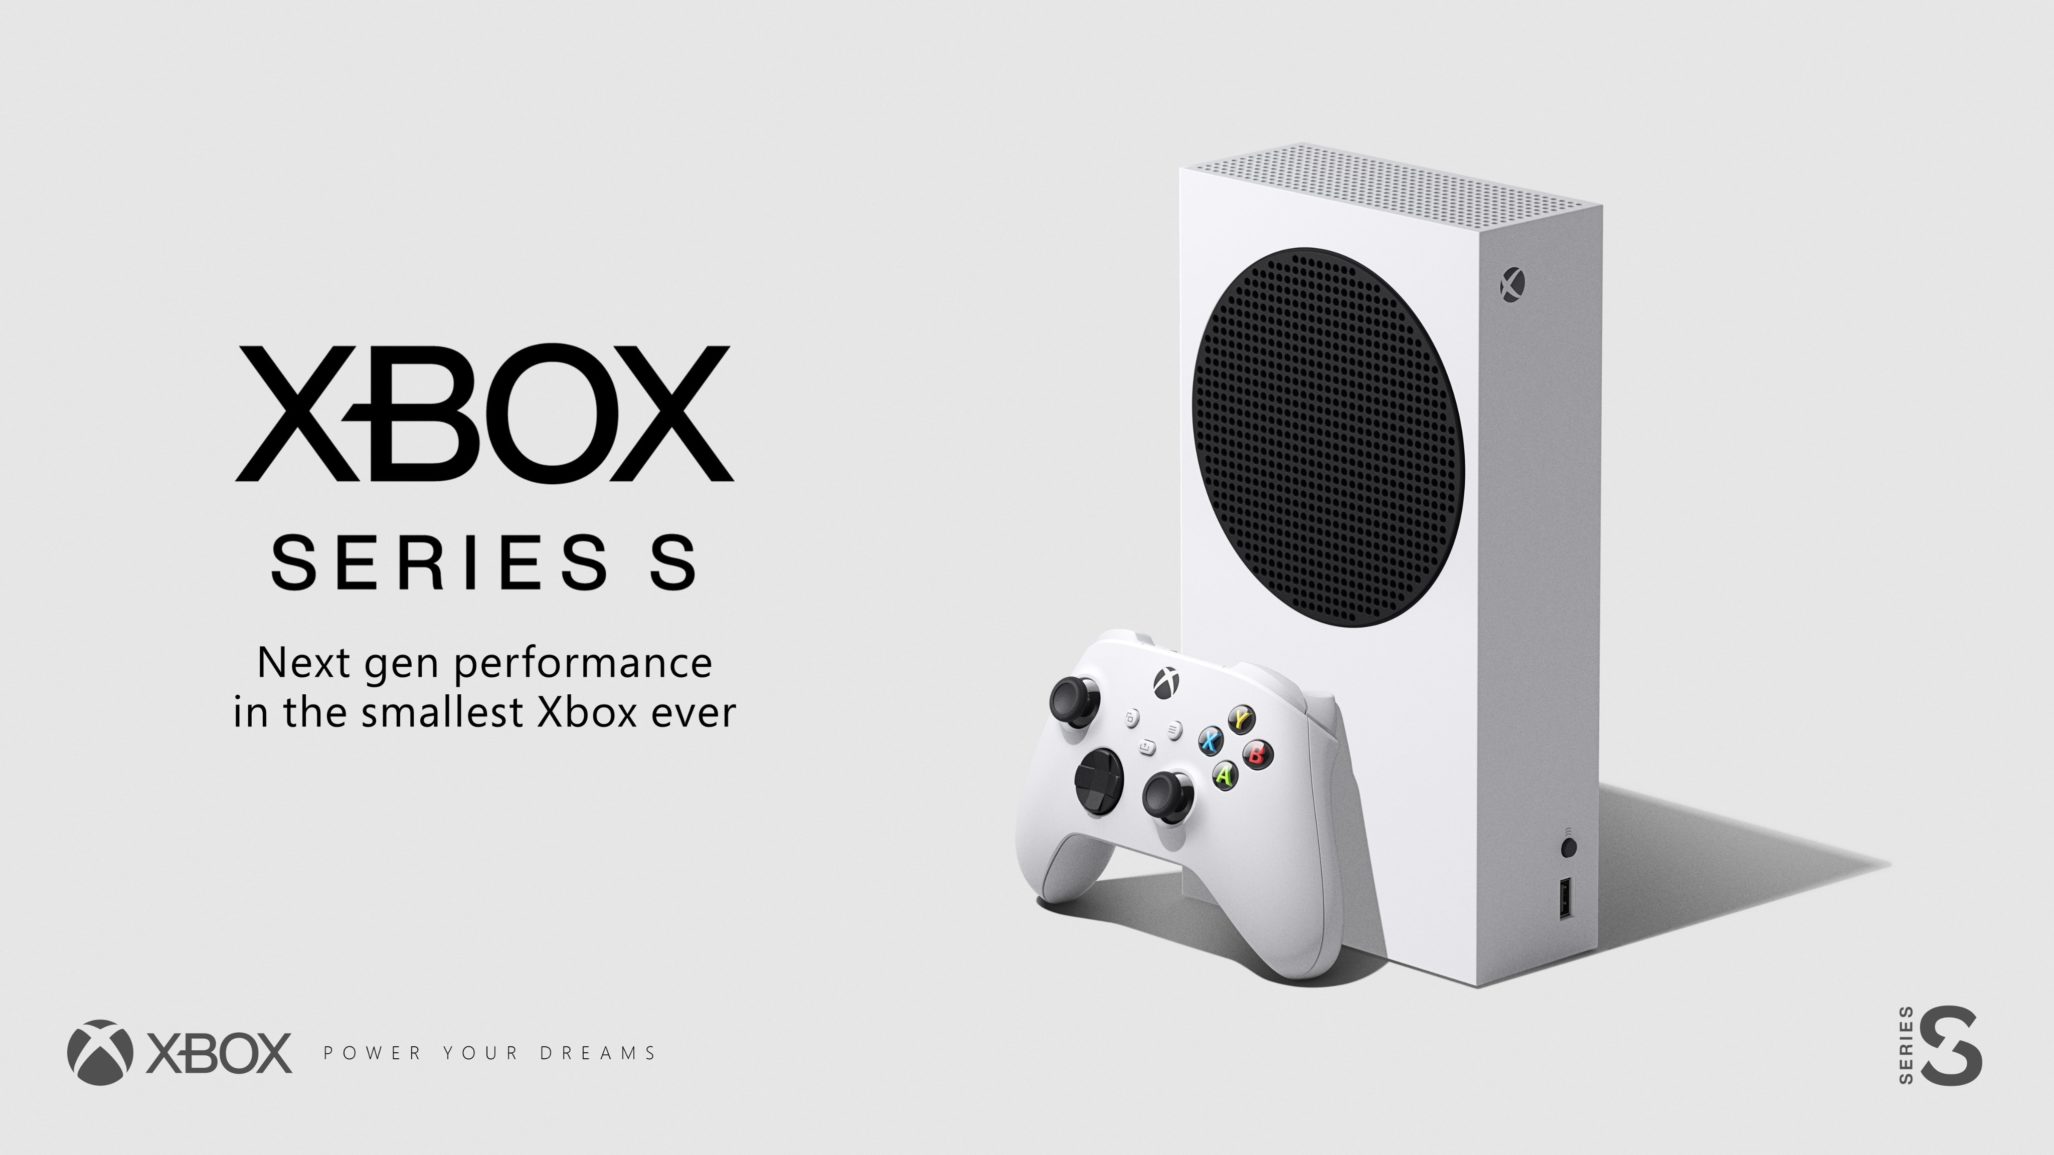 The White Xbox Series S